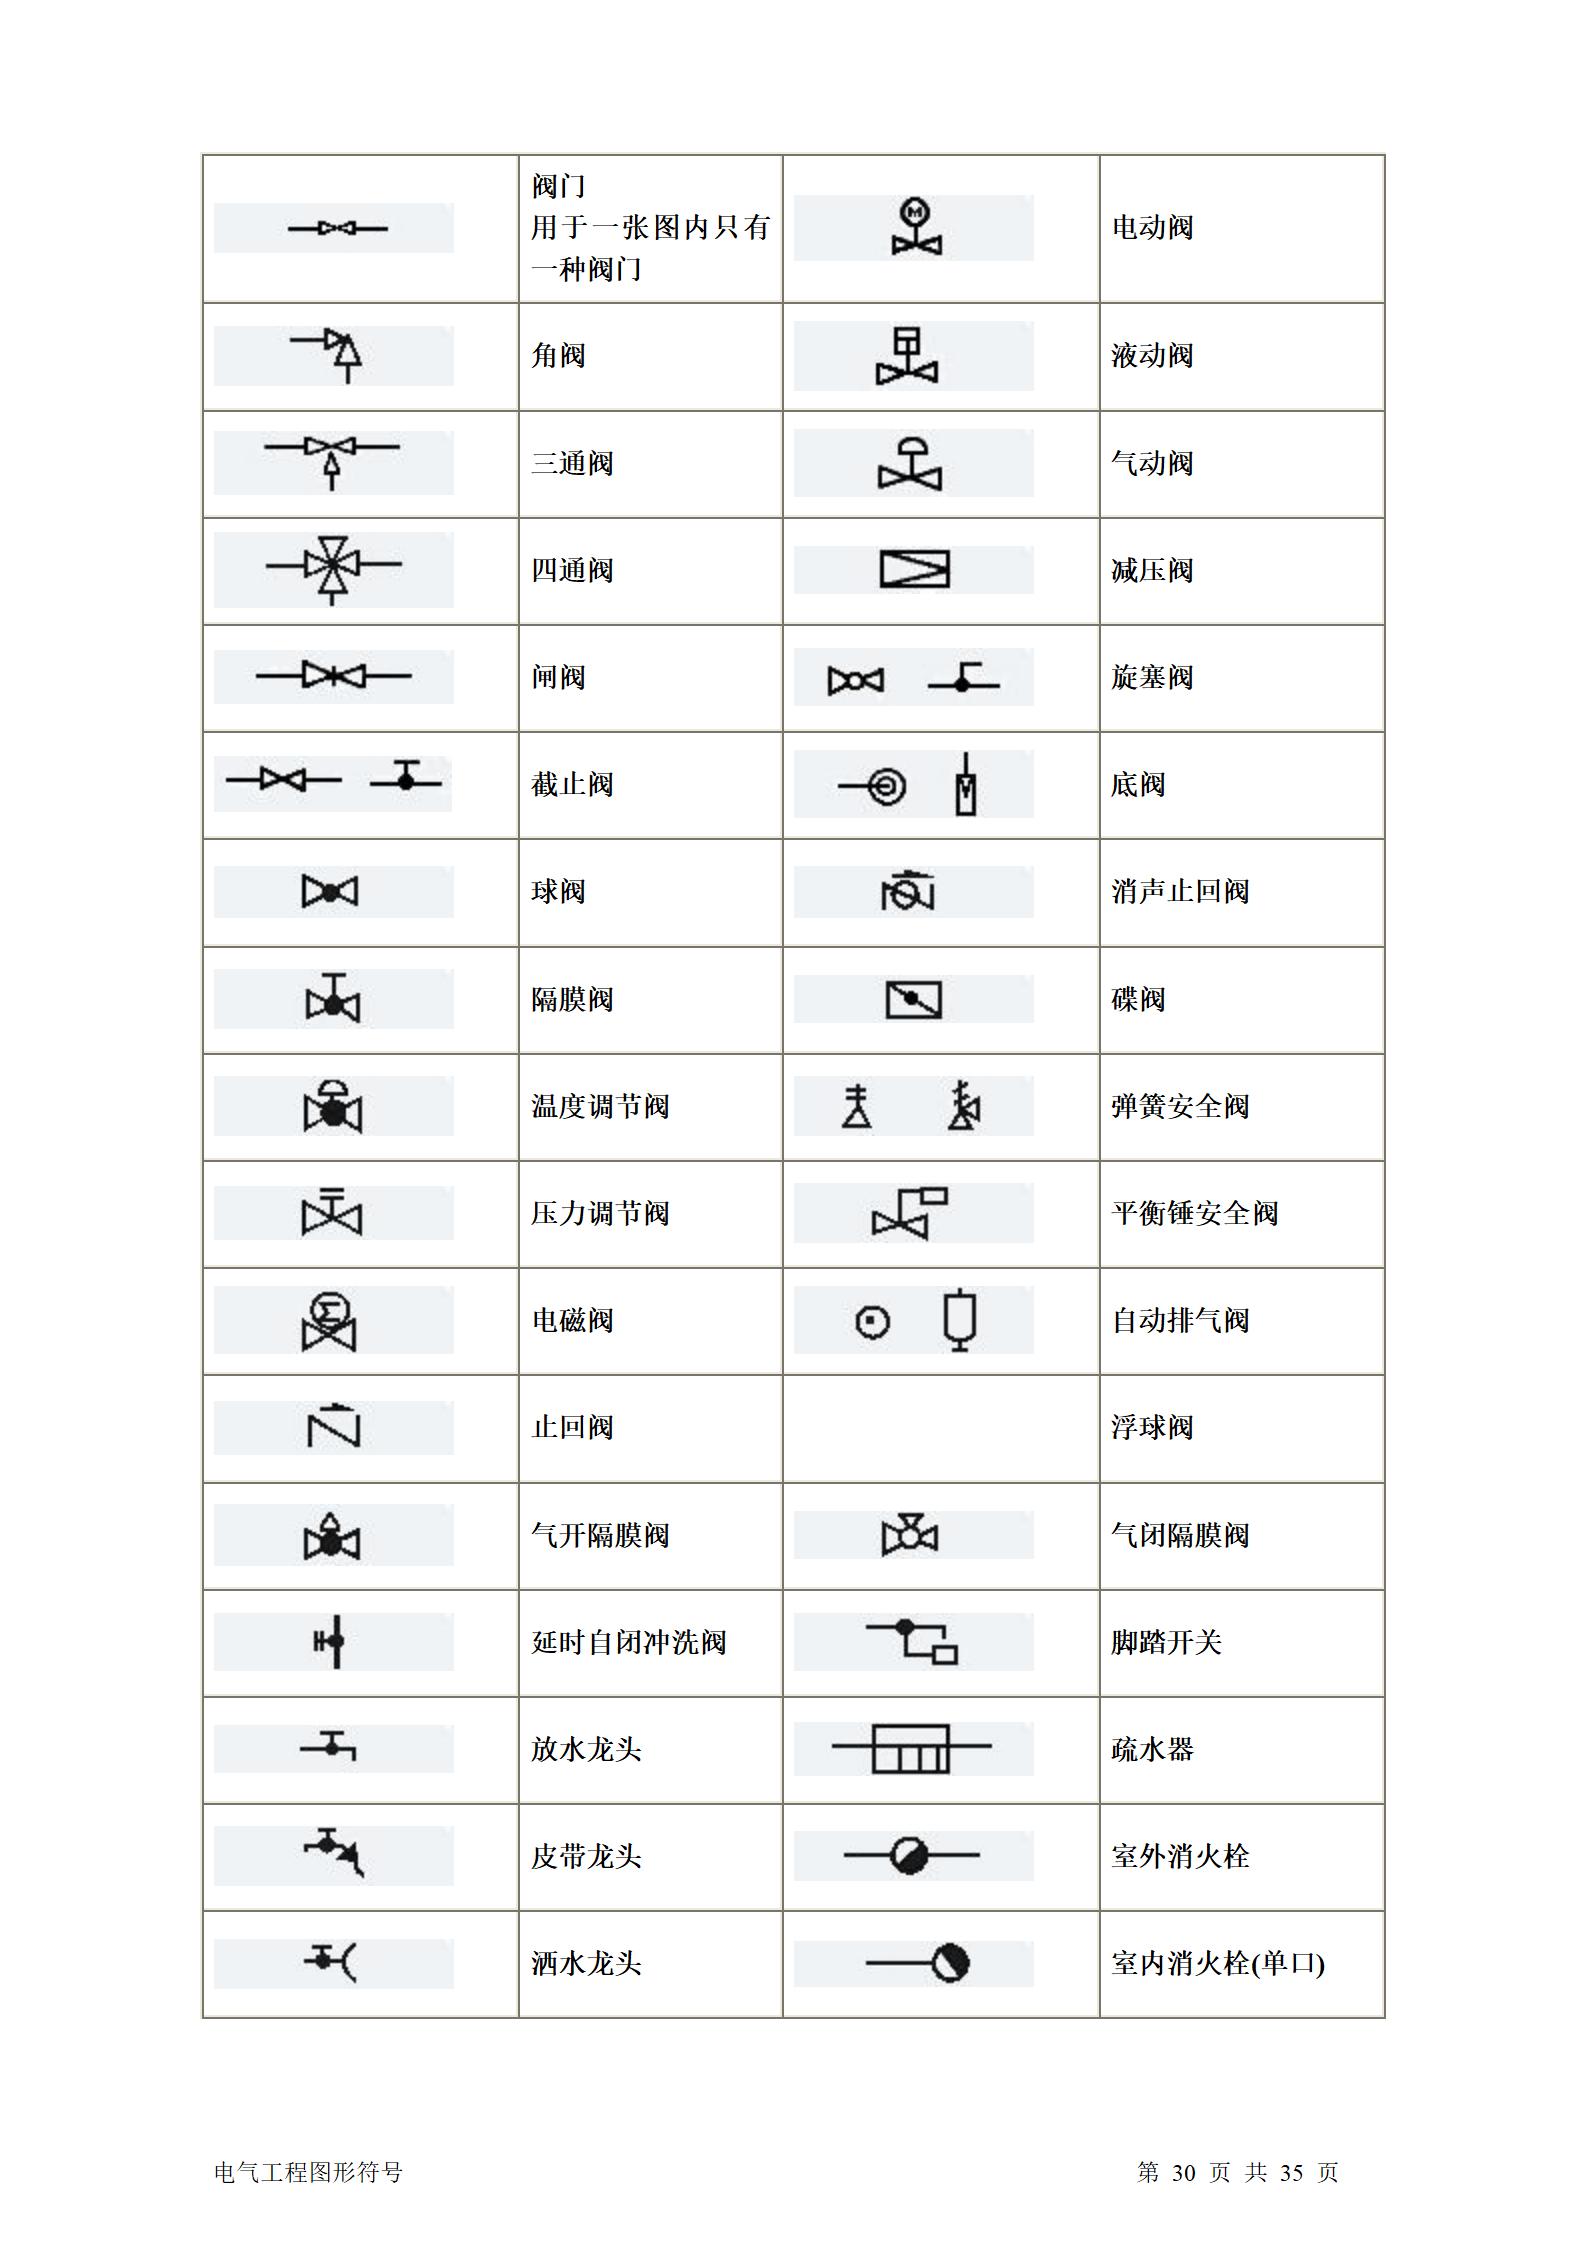 建筑电气、水暖、通风工程图形符号大全word版插图(30)